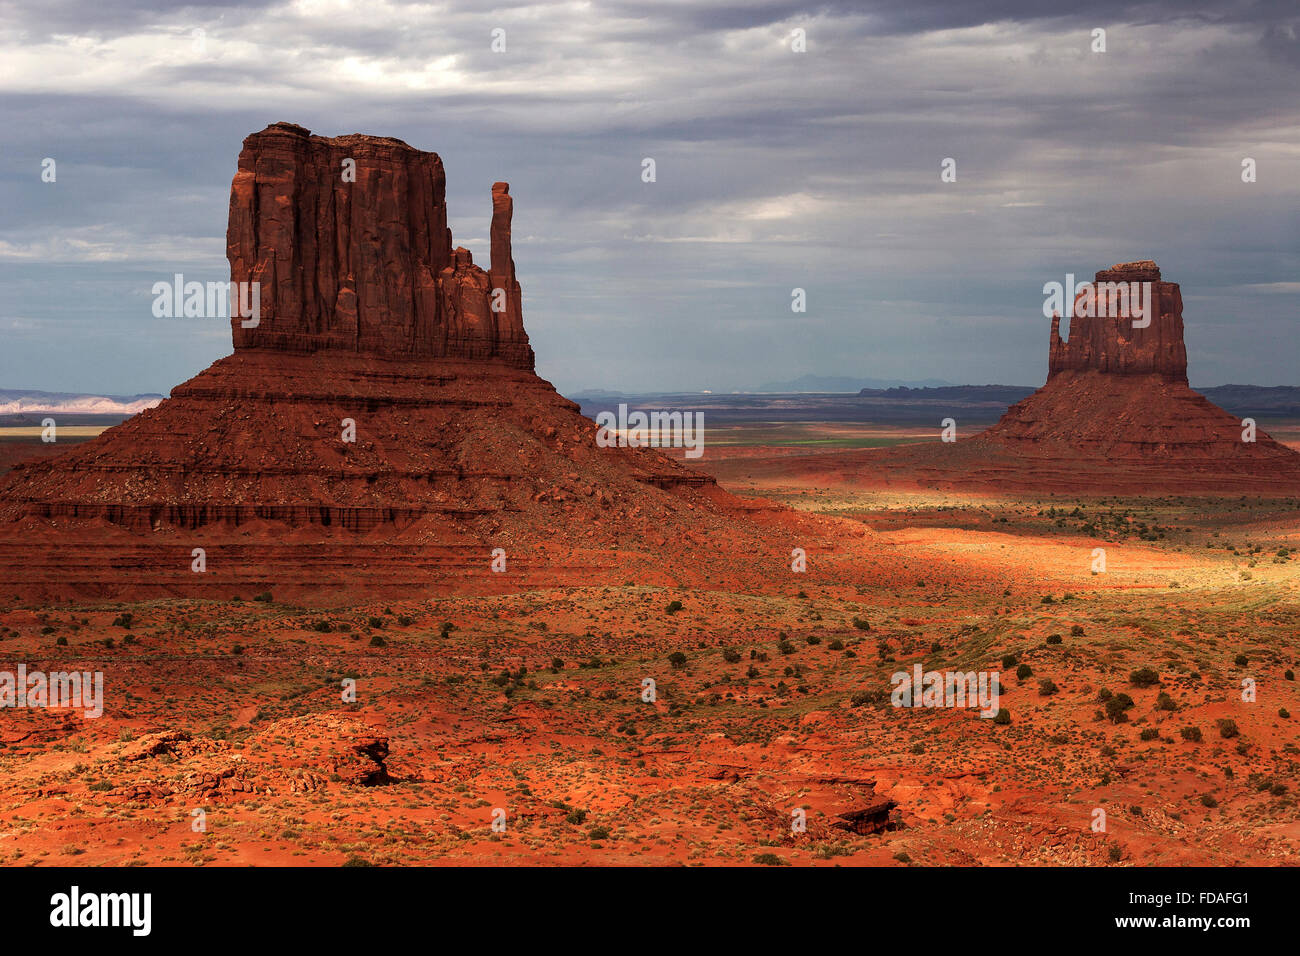 Felsformationen, West Mitten Butte und East Mitten Butte, nach dem Sturm, Wolken, Abendlicht, Monument Valley Navajo Tribal Park Stockfoto